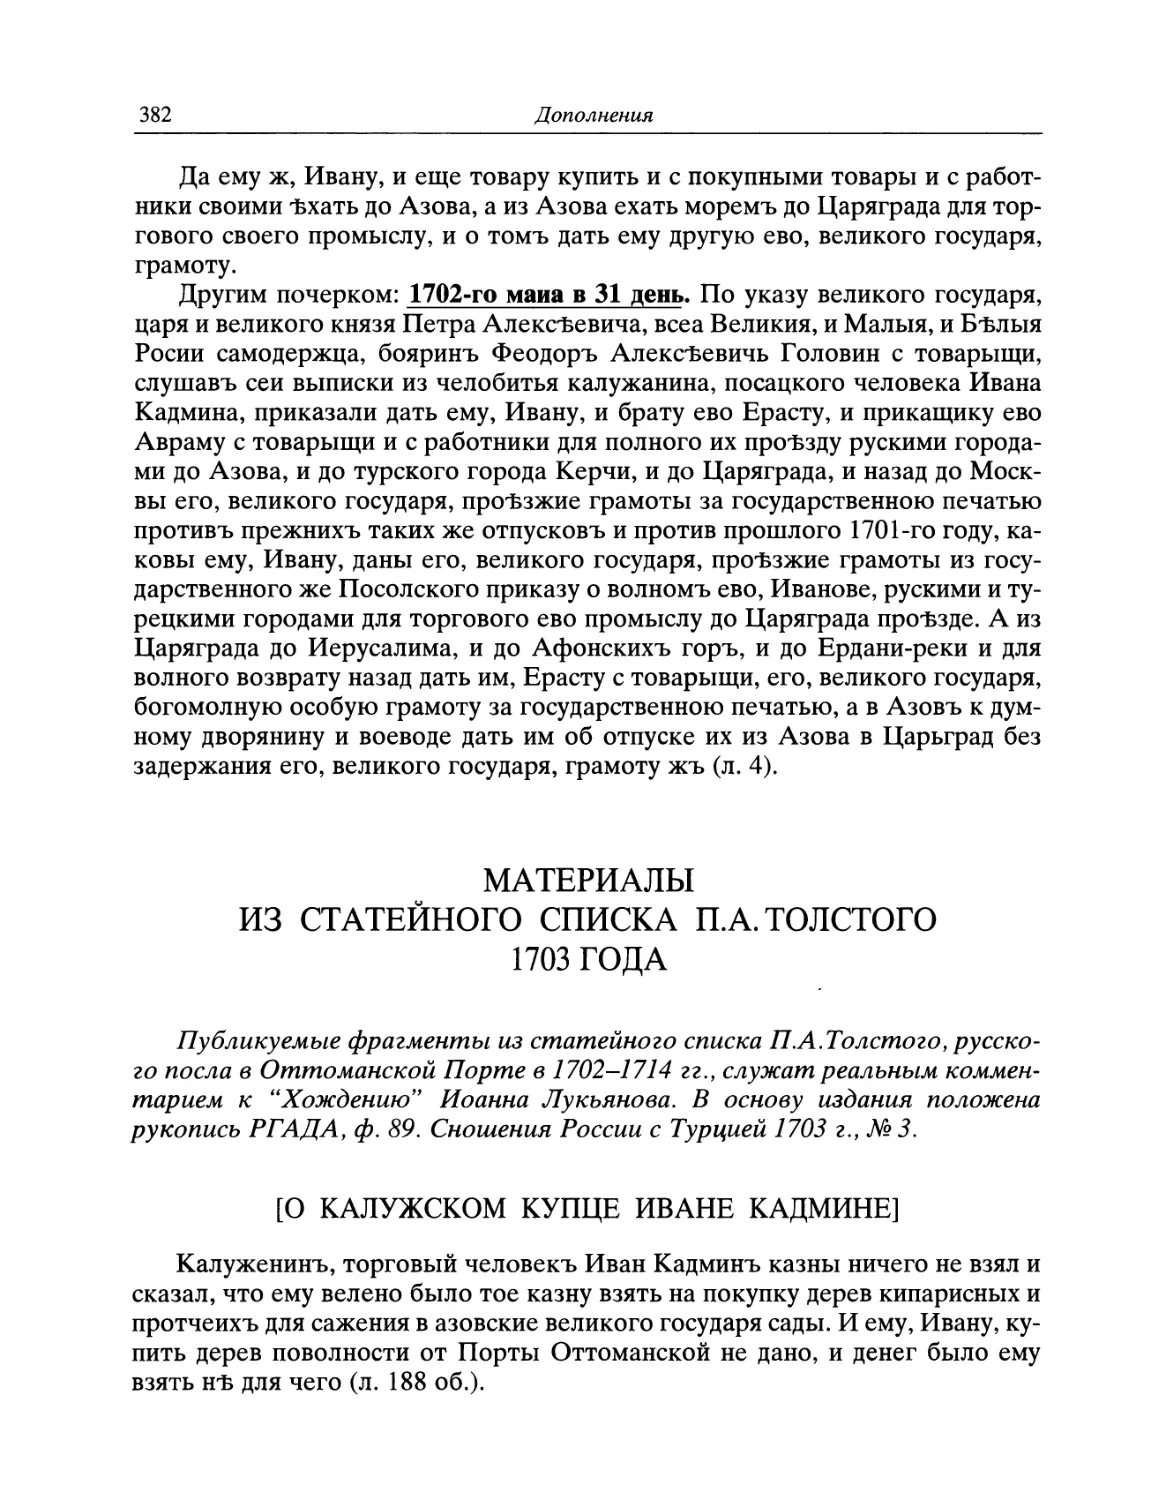 Материалы из статейного списка П.А. Толстого 1703 года